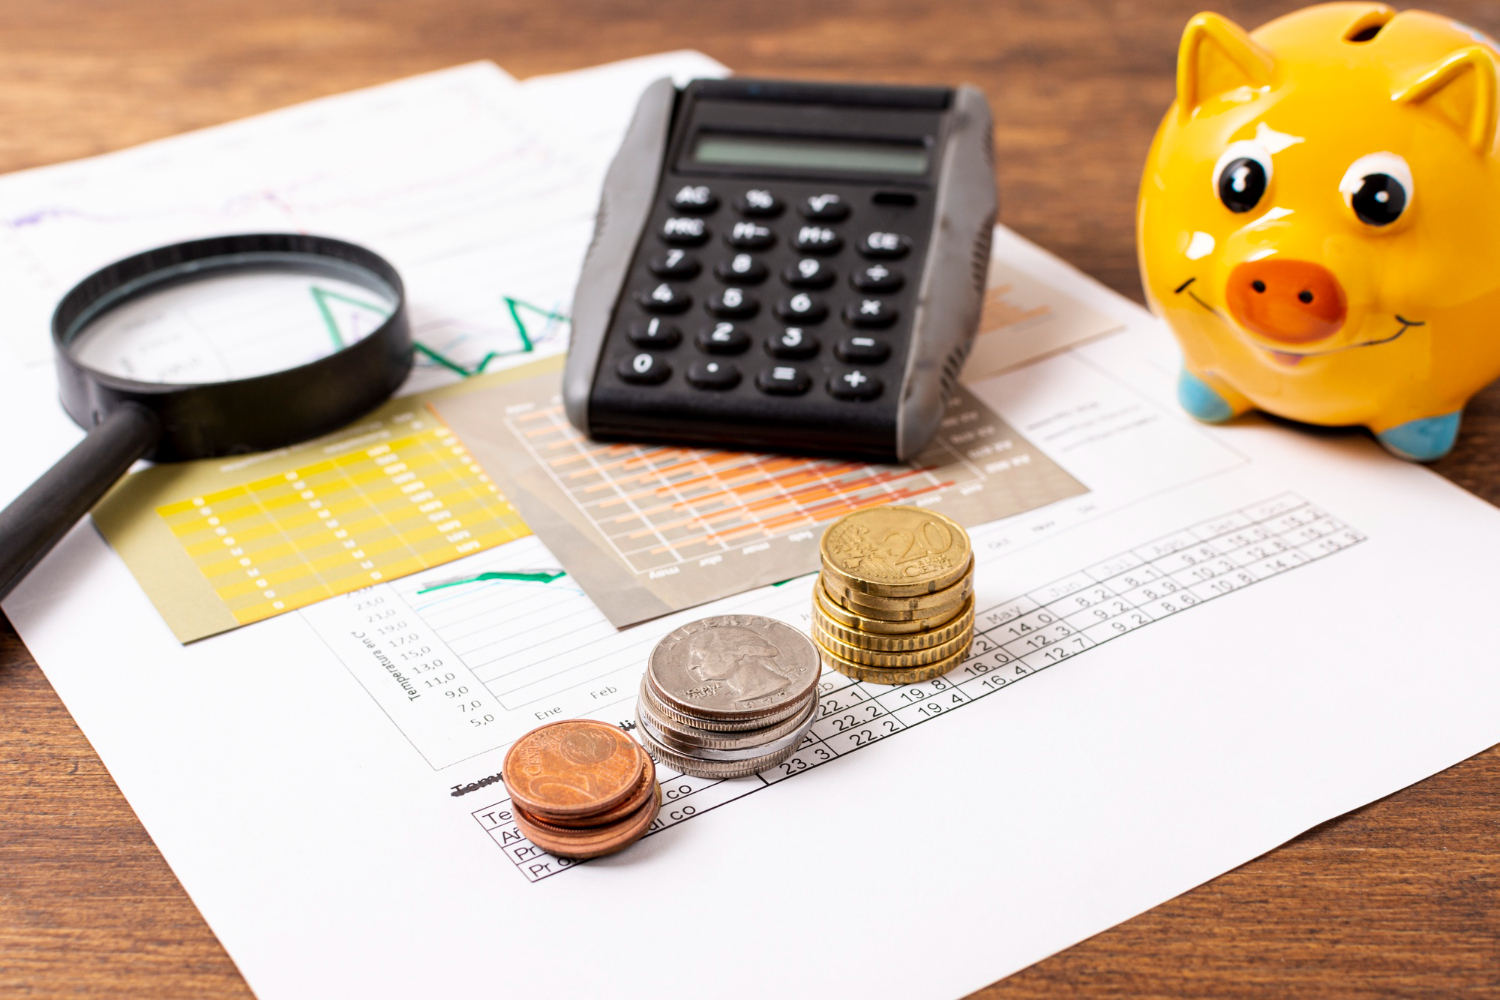 Quelle est la fiscalité des livrets d'épargnes et lequel faut-il choisir ?